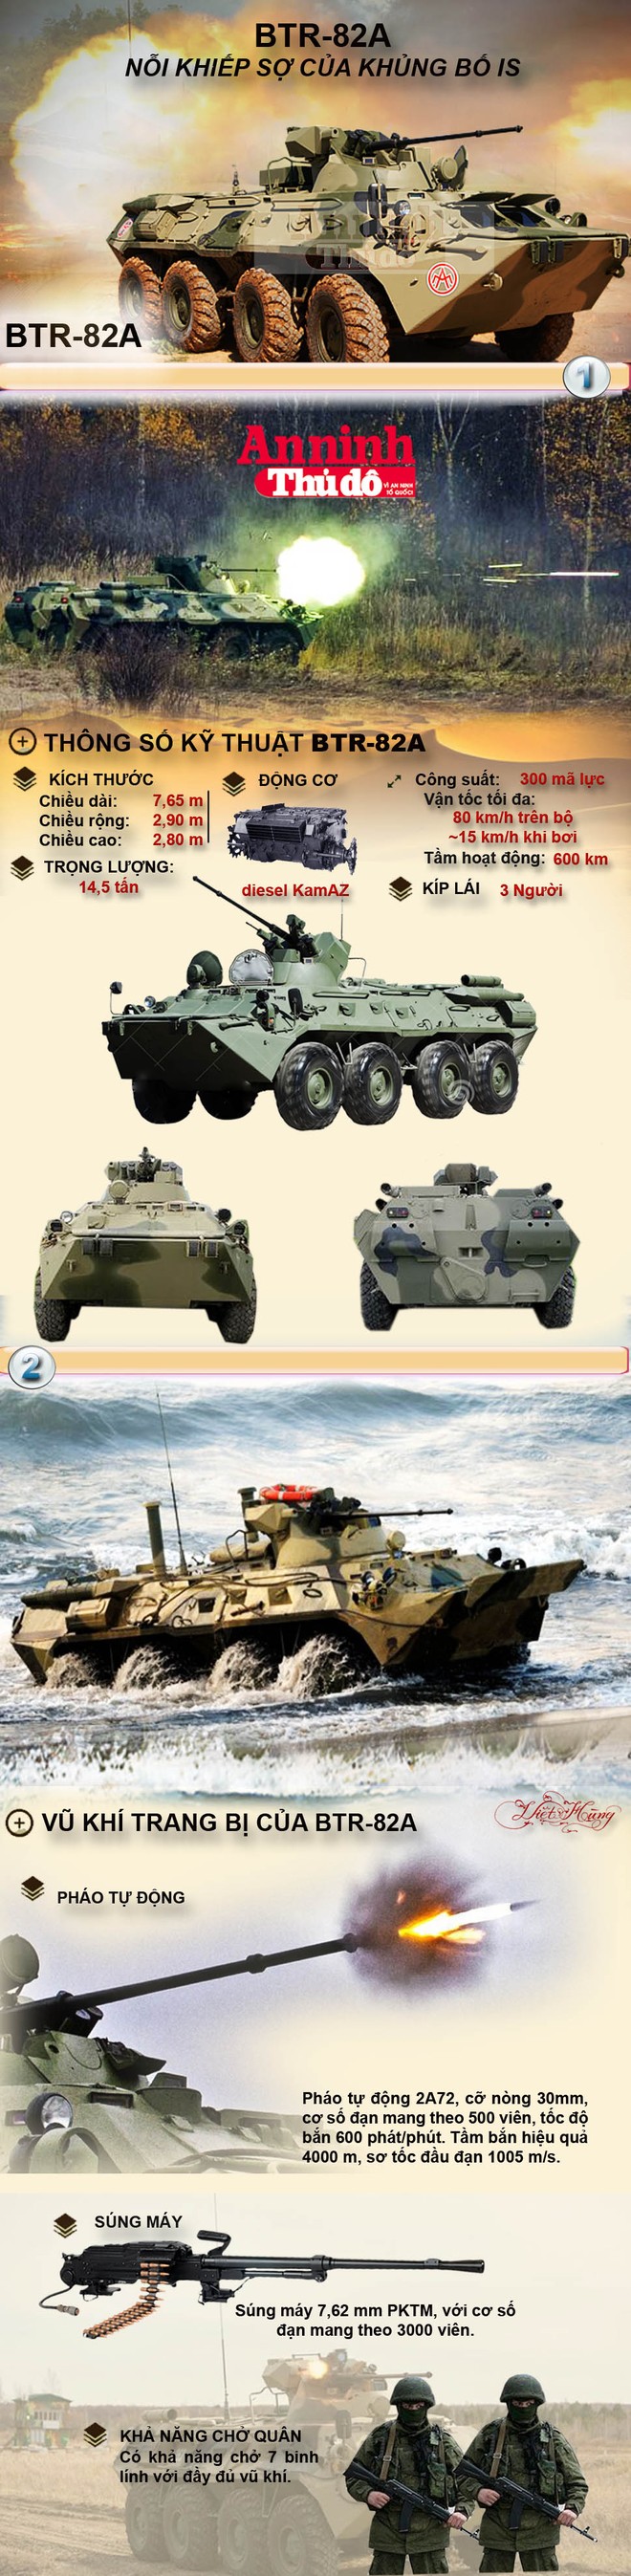 Infographic: BTR-82A - Nỗi khiếp sợ của tổ chức khủng bố IS ảnh 1